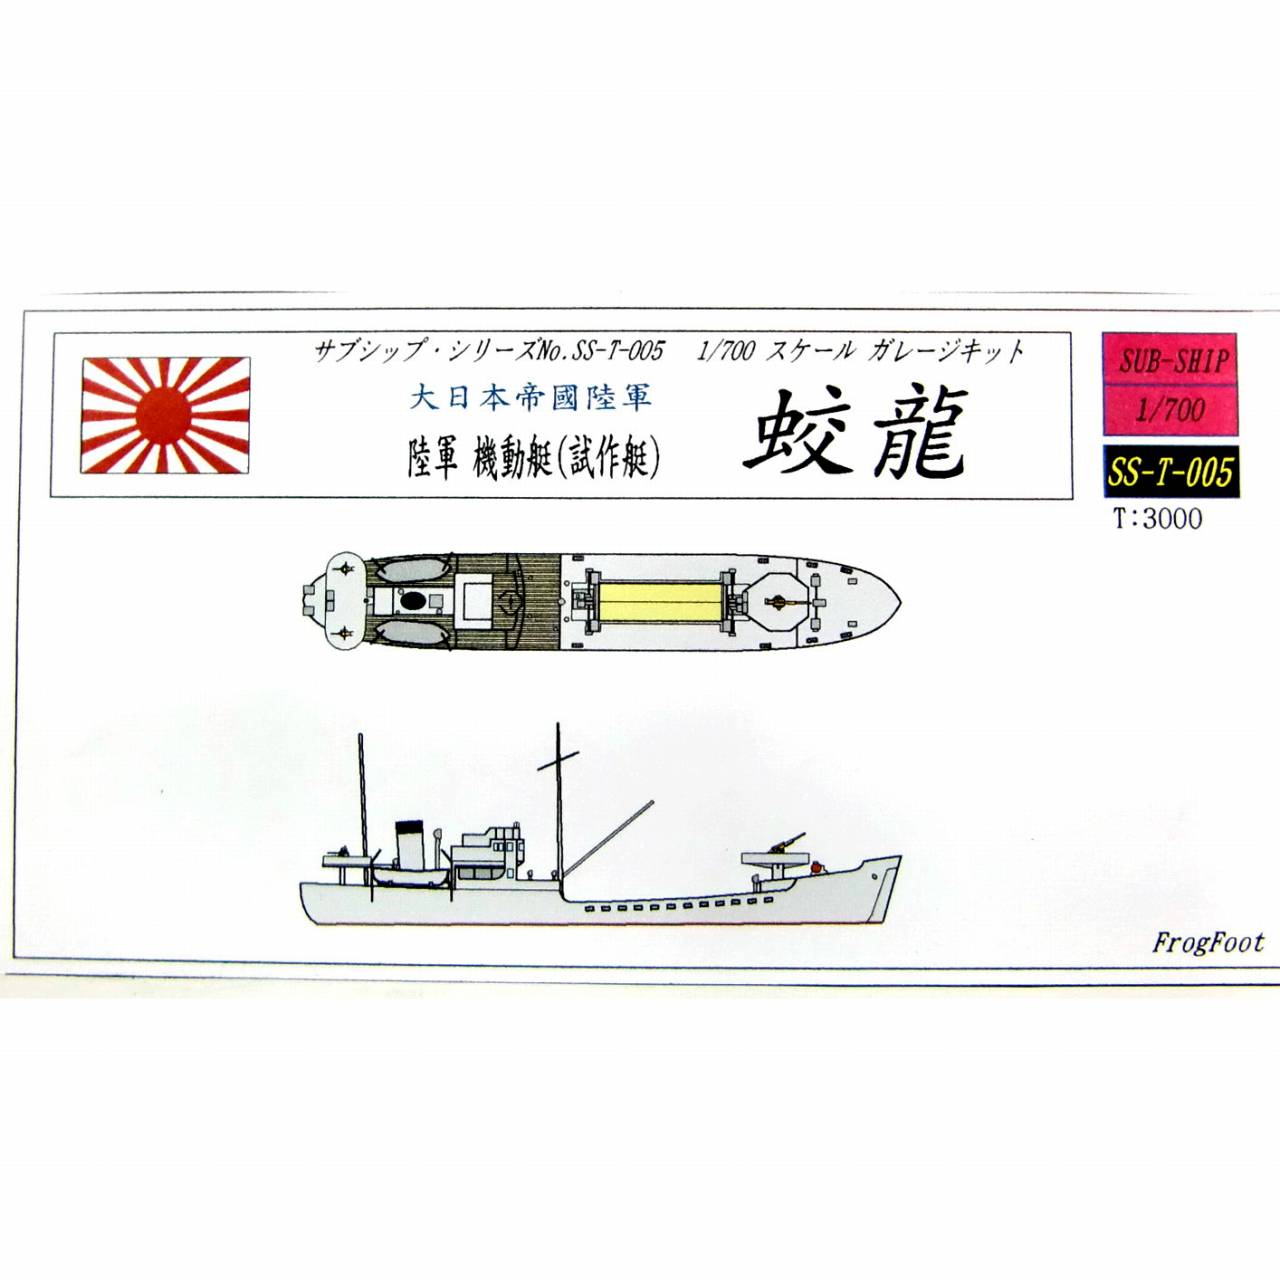 【新製品】SS-T-005N 大日本帝国陸軍 機動艇 第1号艇(試作艇) 效龍 SS艇 リニューアル版